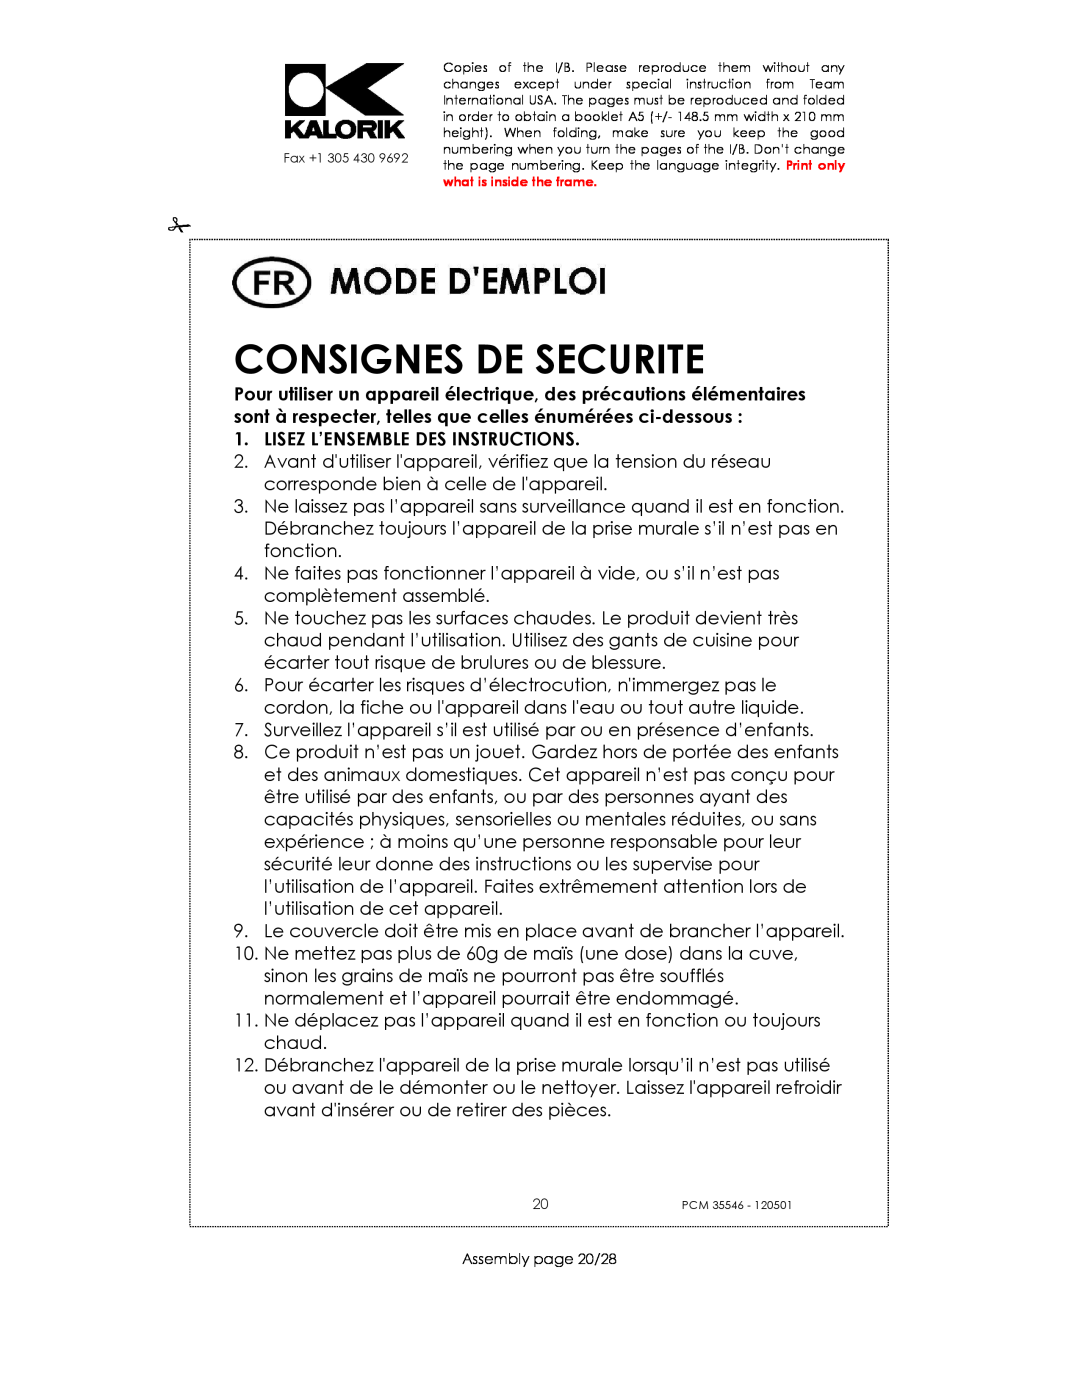 Kalorik PCM 35546 manual Consignes De Securite, Lisez L’Ensemble Des Instructions 